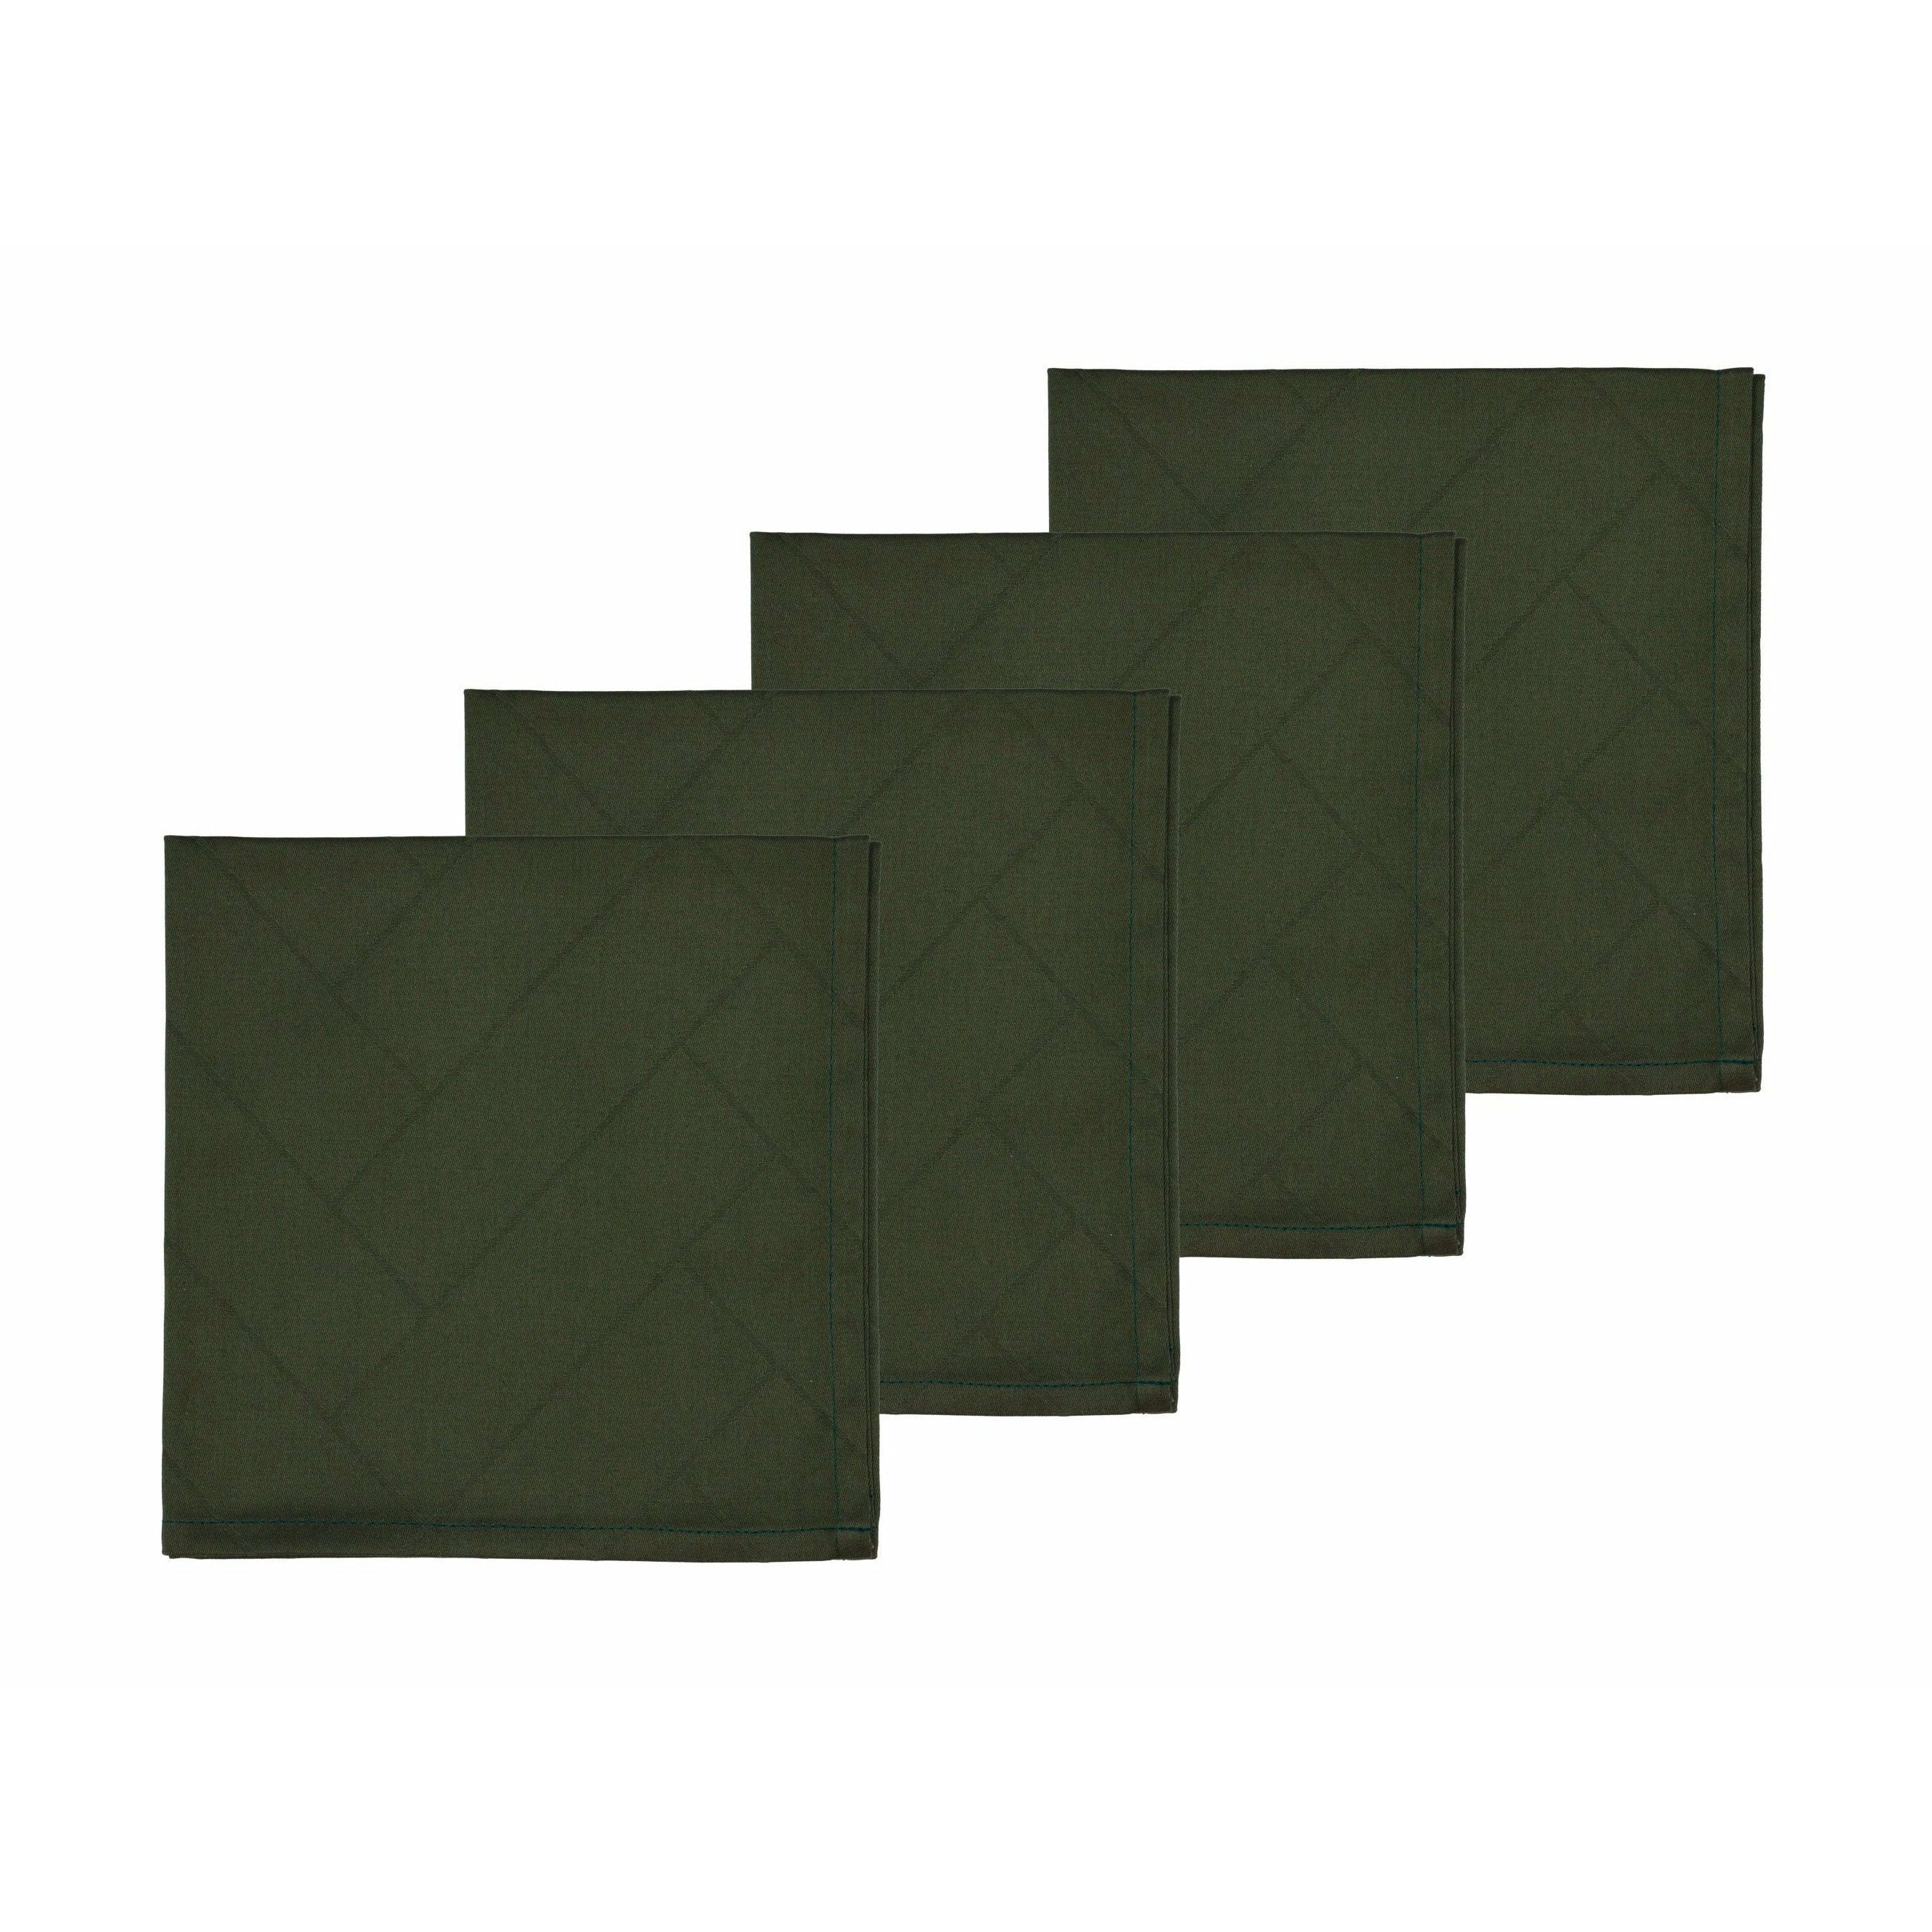 södahl餐巾纸damask森林绿色4件